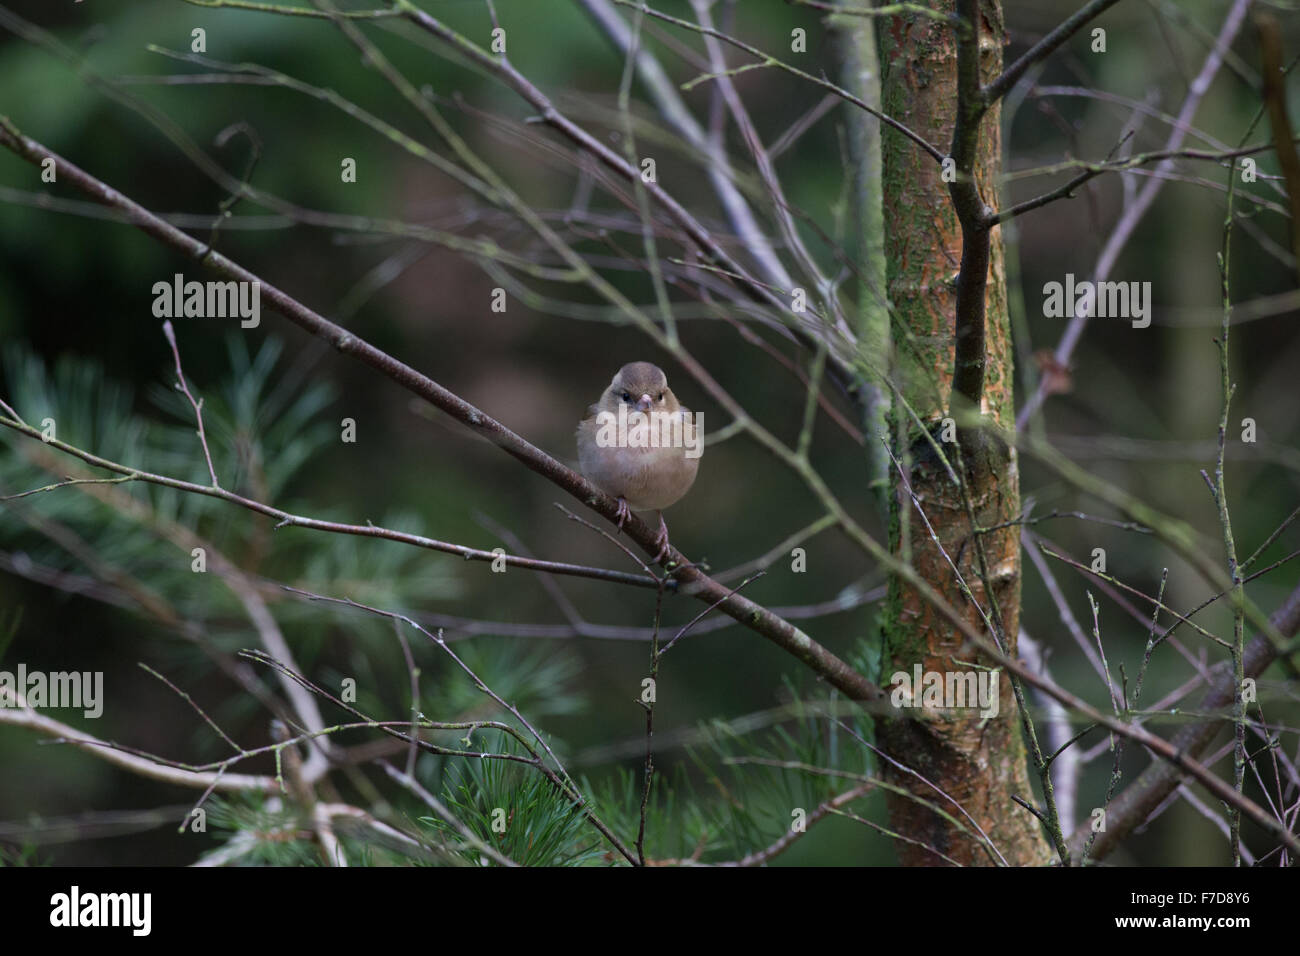 Chaffinch, Female, Garden Bird Stock Photo